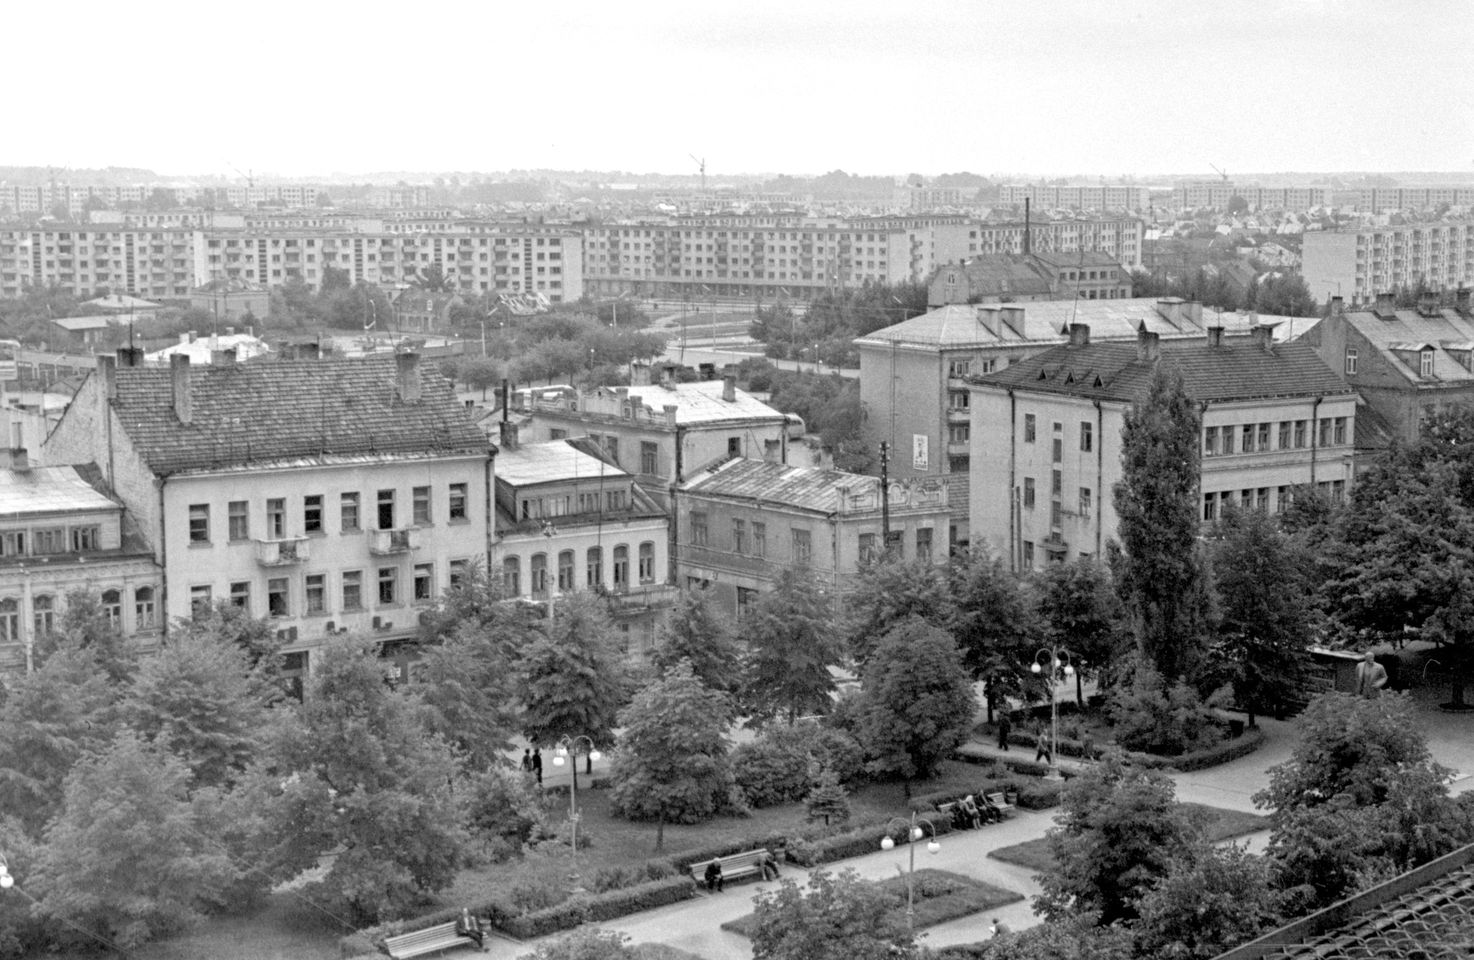 Panevėžio miesto panorama nuo statomo viešbučio stogo. 1970 m. rugpjūčio mėn. Nuotraukos autorius Petras Peleckis. LCVA 0-035525